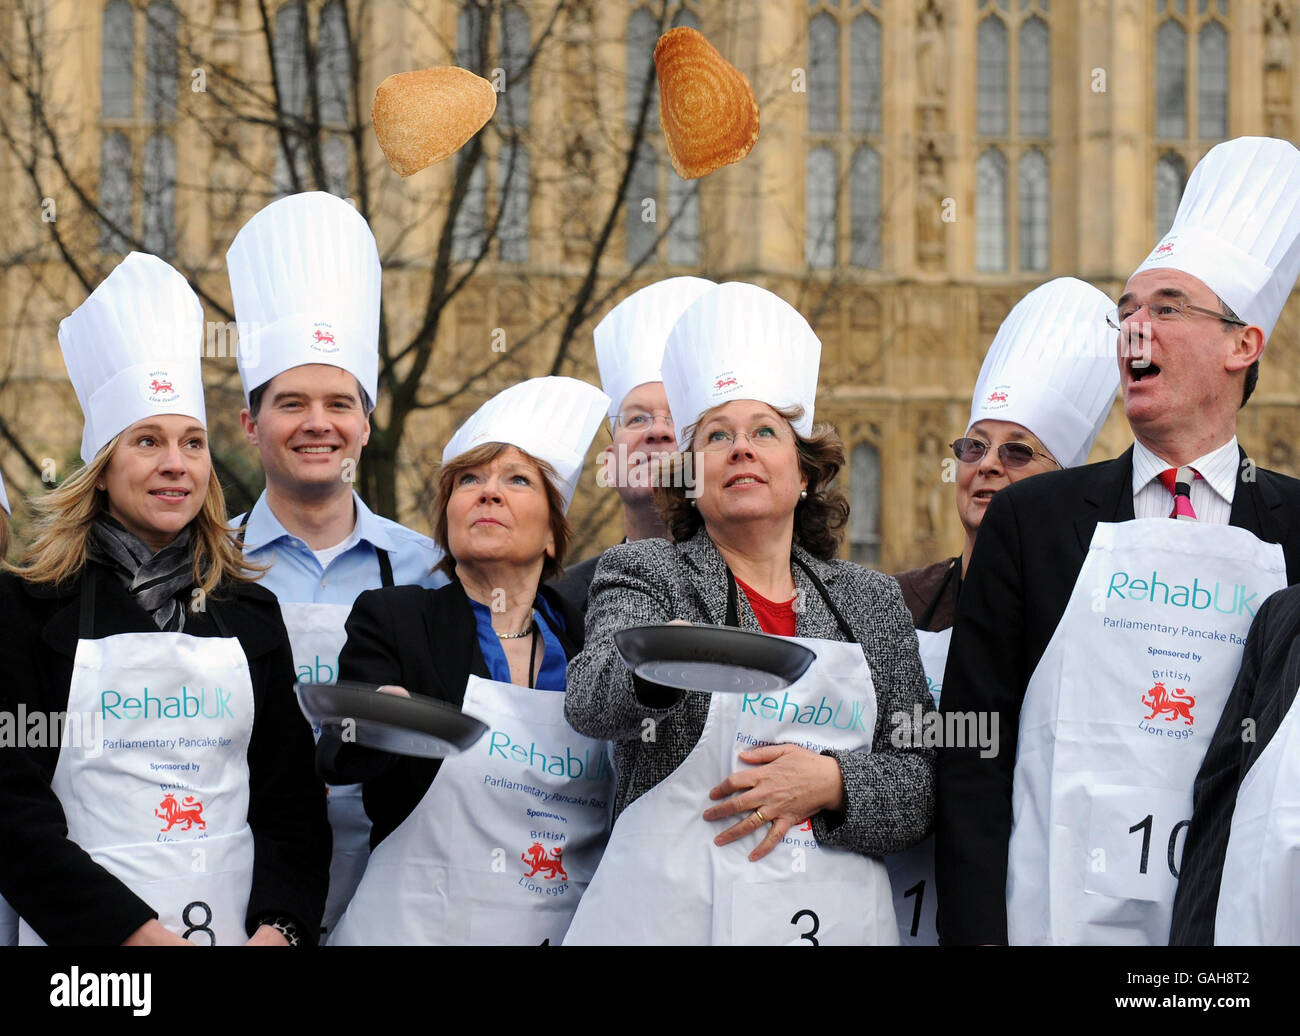 Baroness Garden of Frognal, Linke, und Baroness Northover üben ihren Pfannkuchen vor dem Houses of Parliament, London, zu werfen, bevor sie am Parliamentary Pancake Race teilnehmen. Stockfoto